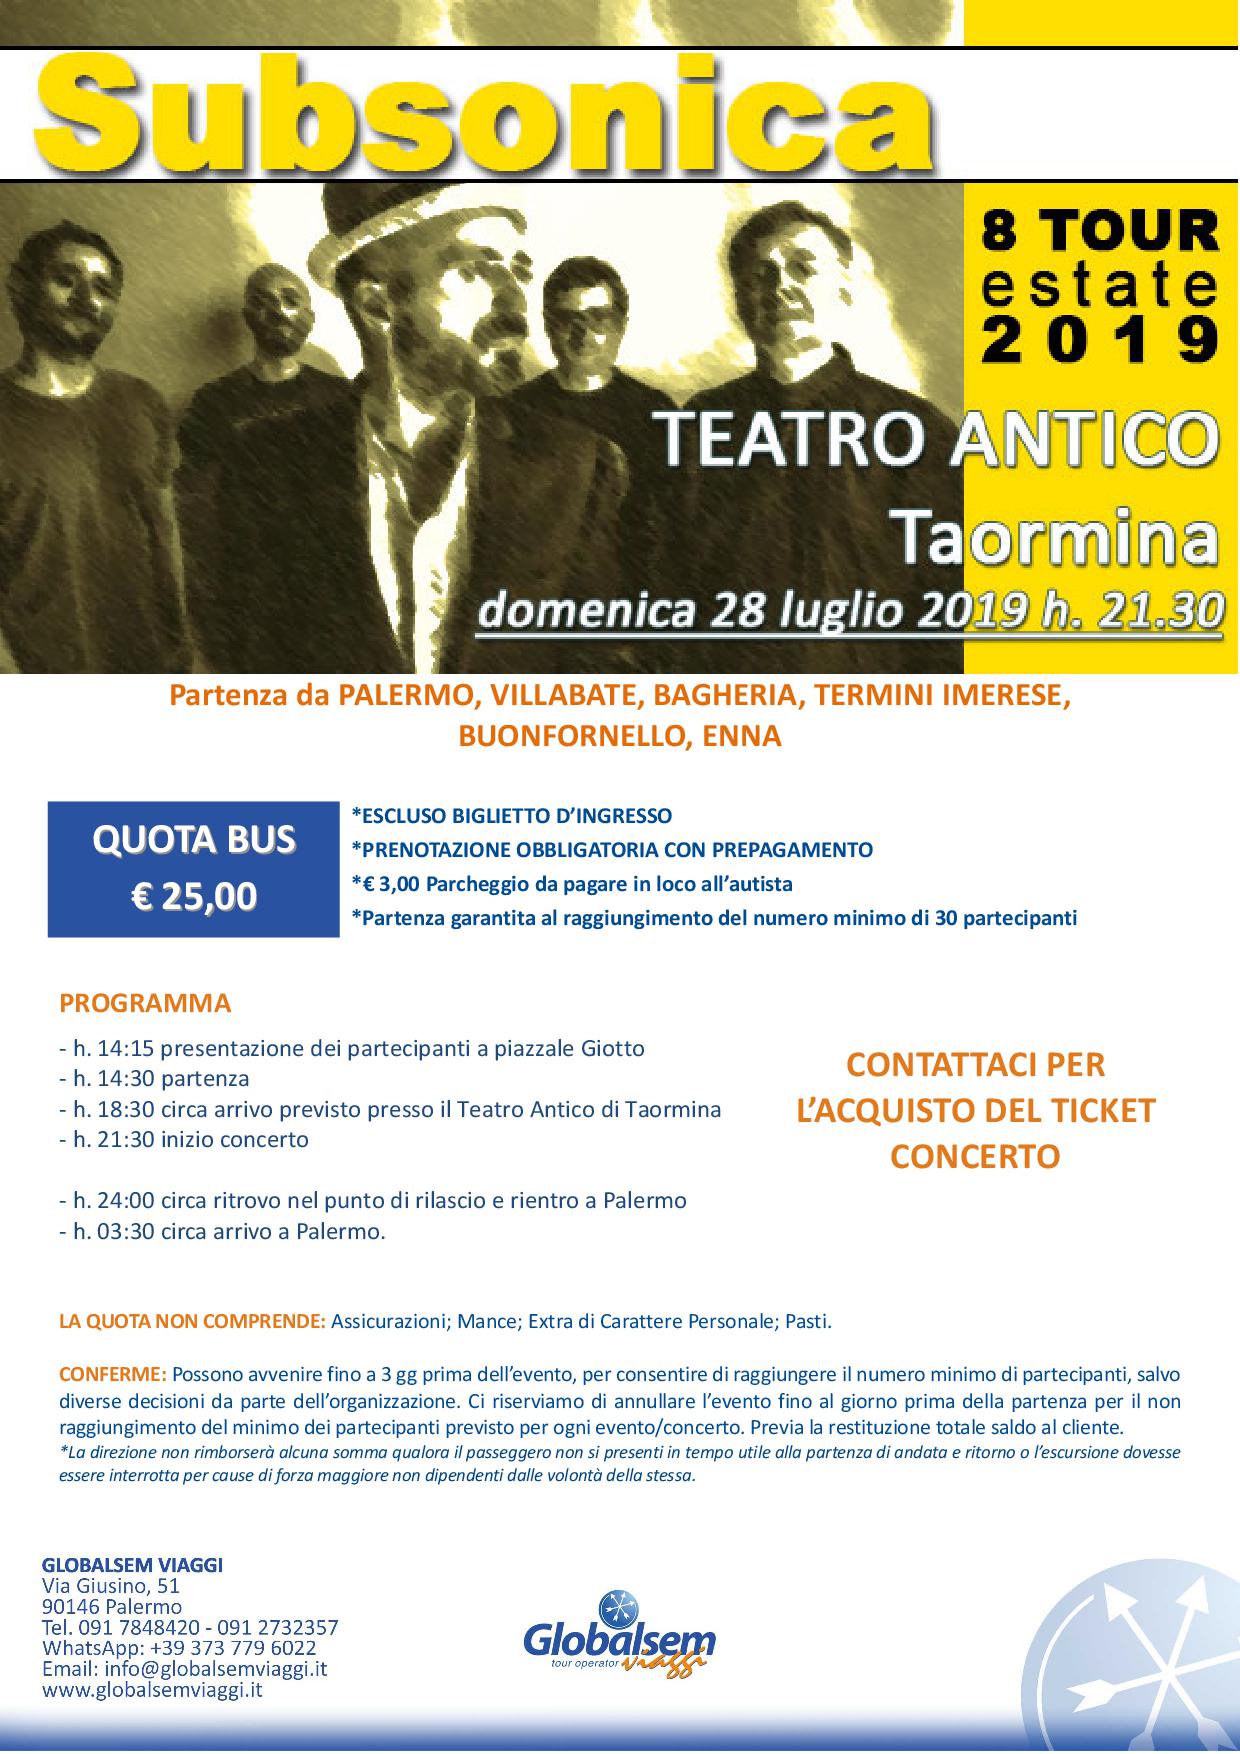 Subsonica in concerto a Taormina il 27 luglio 2019 - Bus da Palermo € 25.